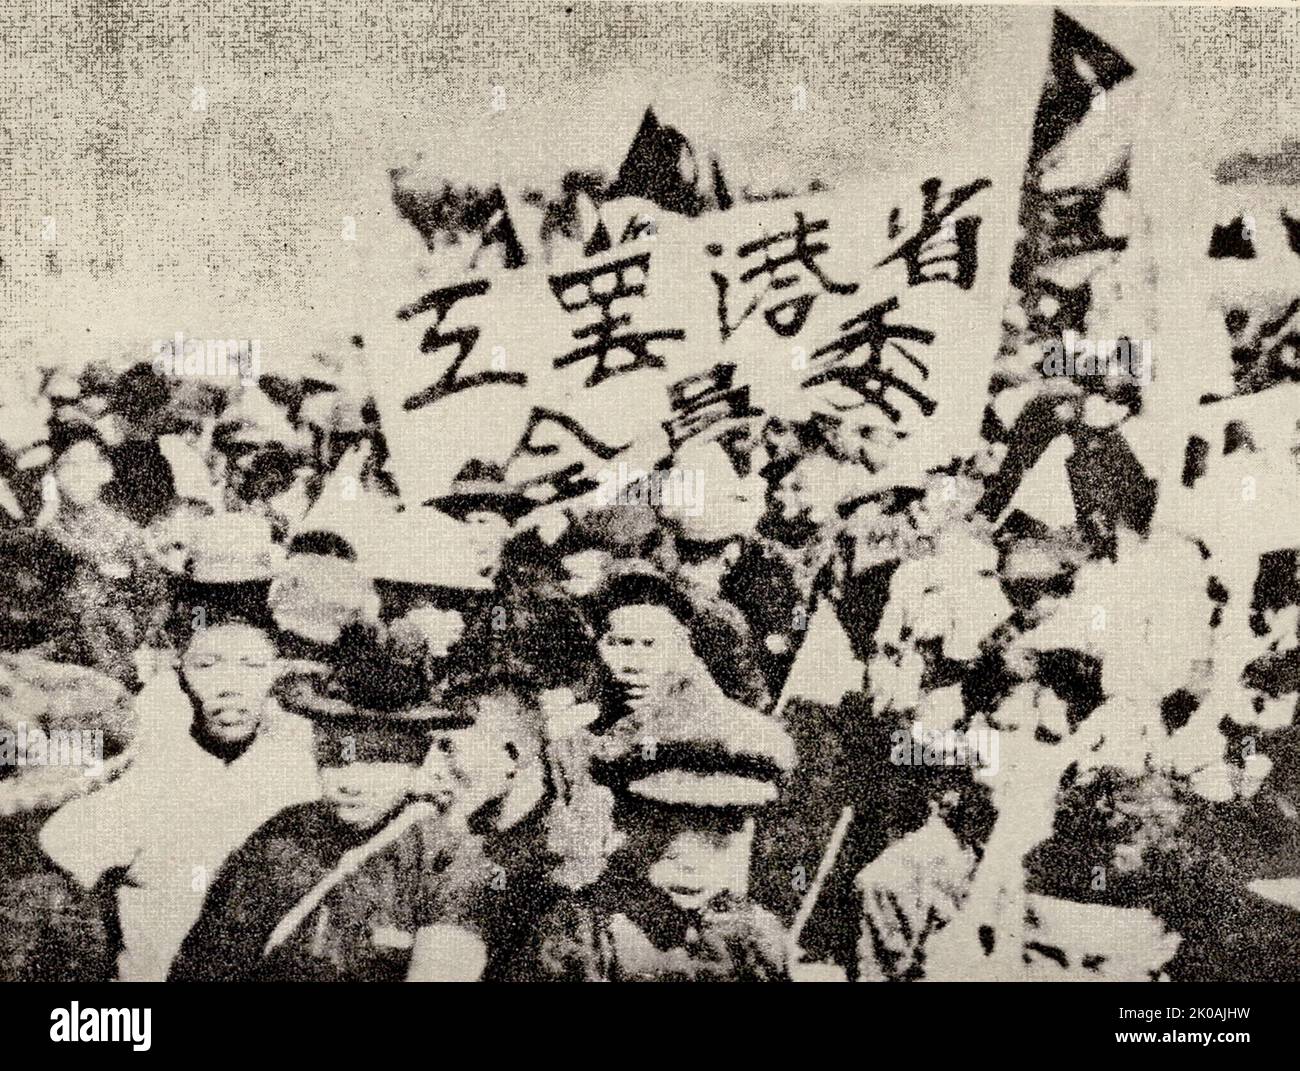 200.000 i lavoratori di Guangdong e Hong Kong colpiscono per più di un anno per sostenere i movimenti antimperialisti di Shanghai. Nella foto sono raffigurati lavoratori che detengono proteste e dimostrazioni. Questo accadde durante il movimento del 30 maggio. Il movimento del 30 maggio era un grande movimento operaio e patriottico contro le potenze imperialiste guidate dal Partito comunista cinese. Foto Stock